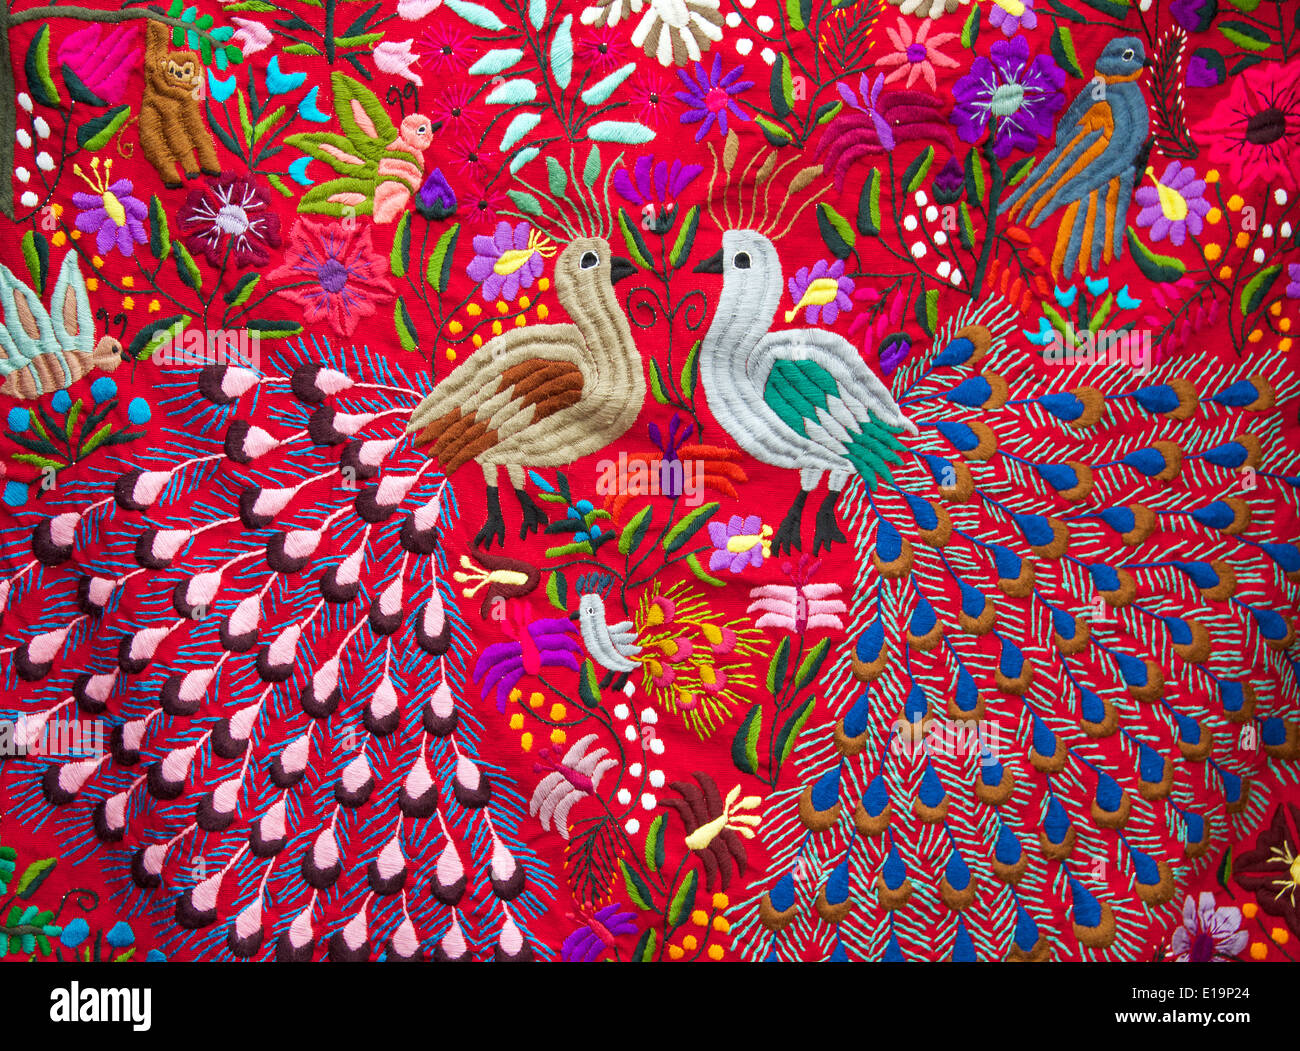 Colourful Indian hand made embroidery San Cristobal market San Cristobal de las Casas Chiapas Mexico Stock Photo